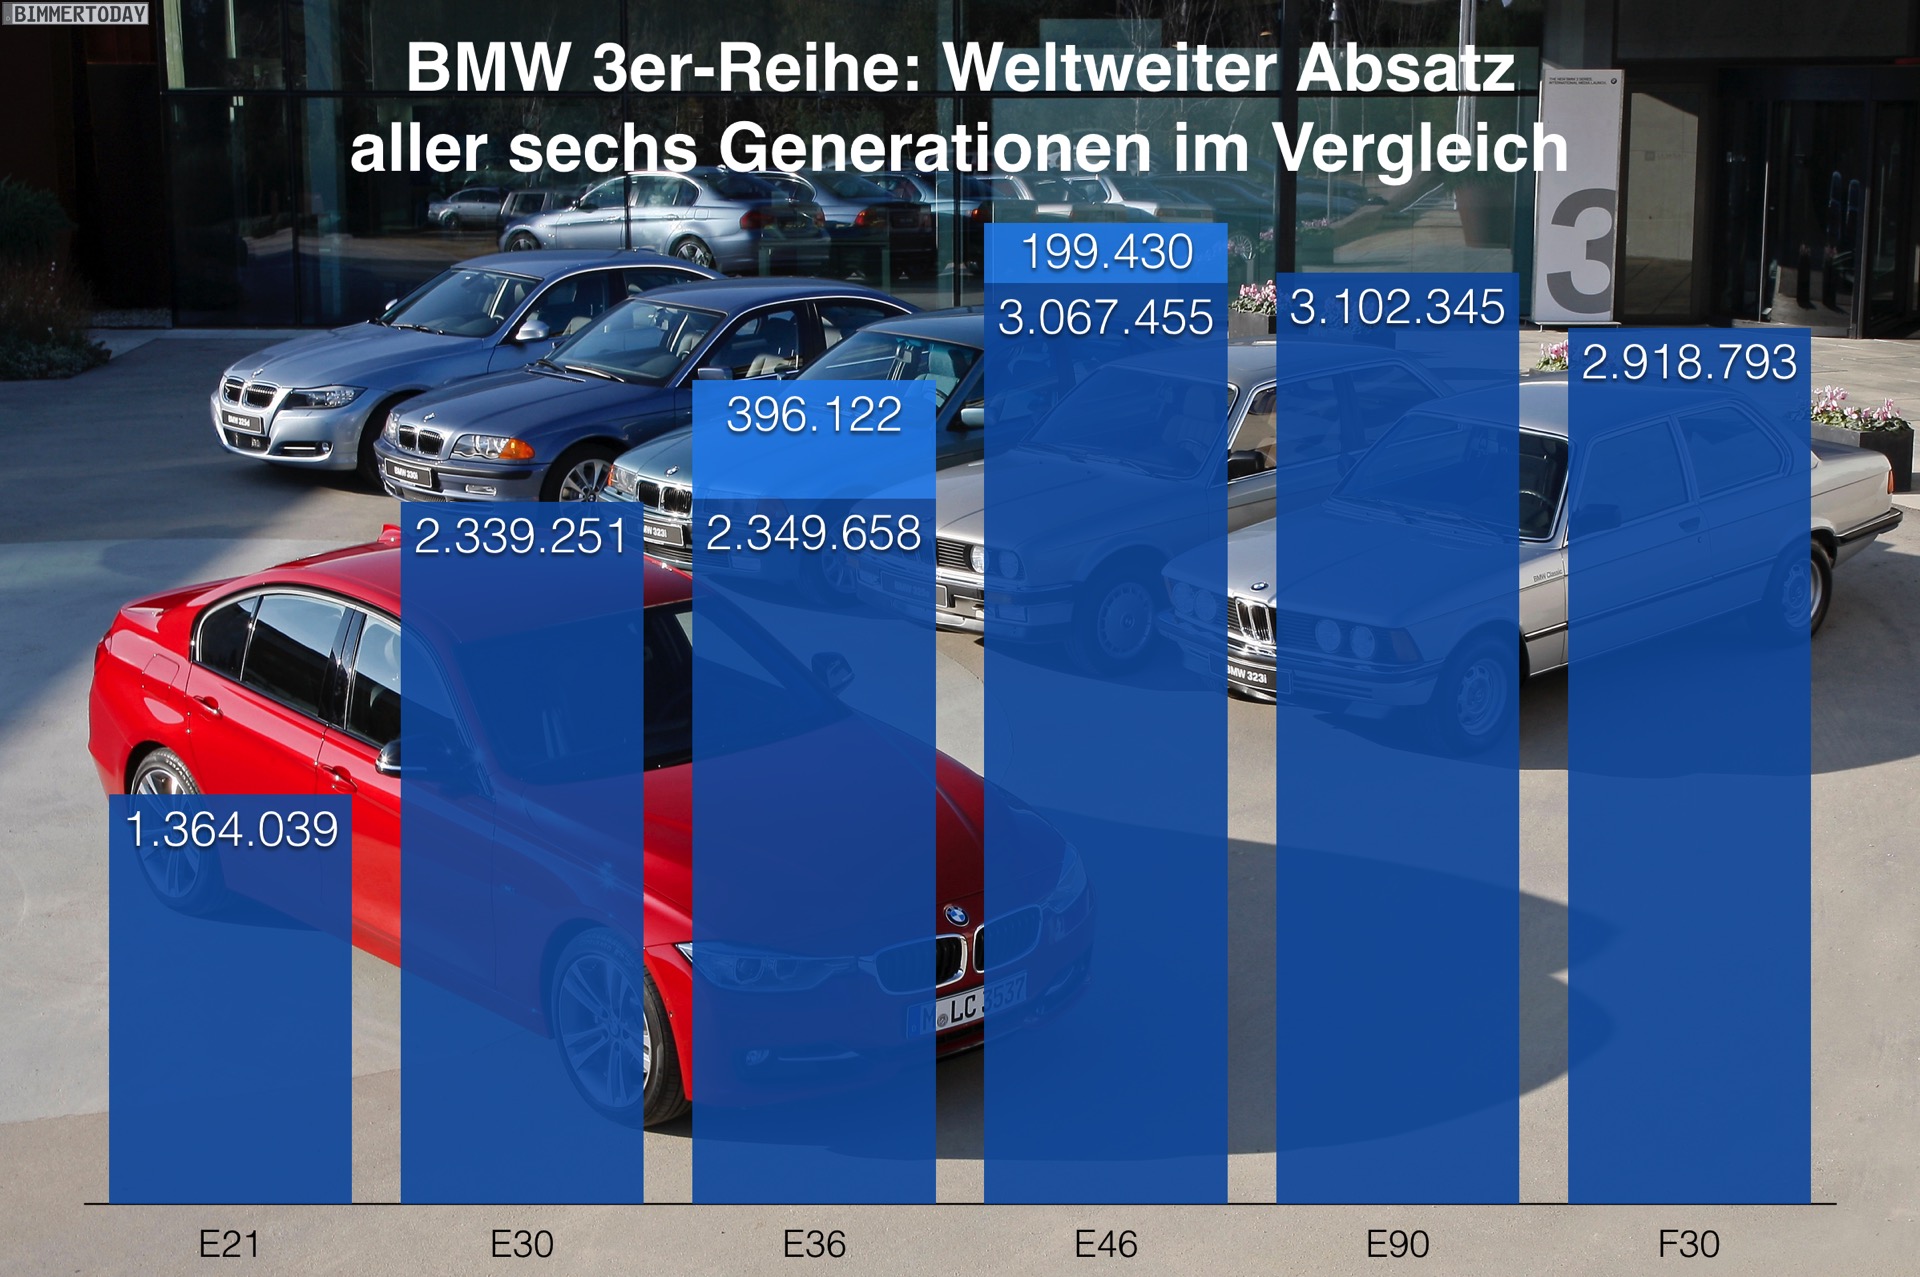 https://cdn.bimmertoday.de/wp-content/uploads/2019/09/BMW-3er-Absatz-weltweit-Vergleich-E21-E30-E36-E46-E90-F30.jpg